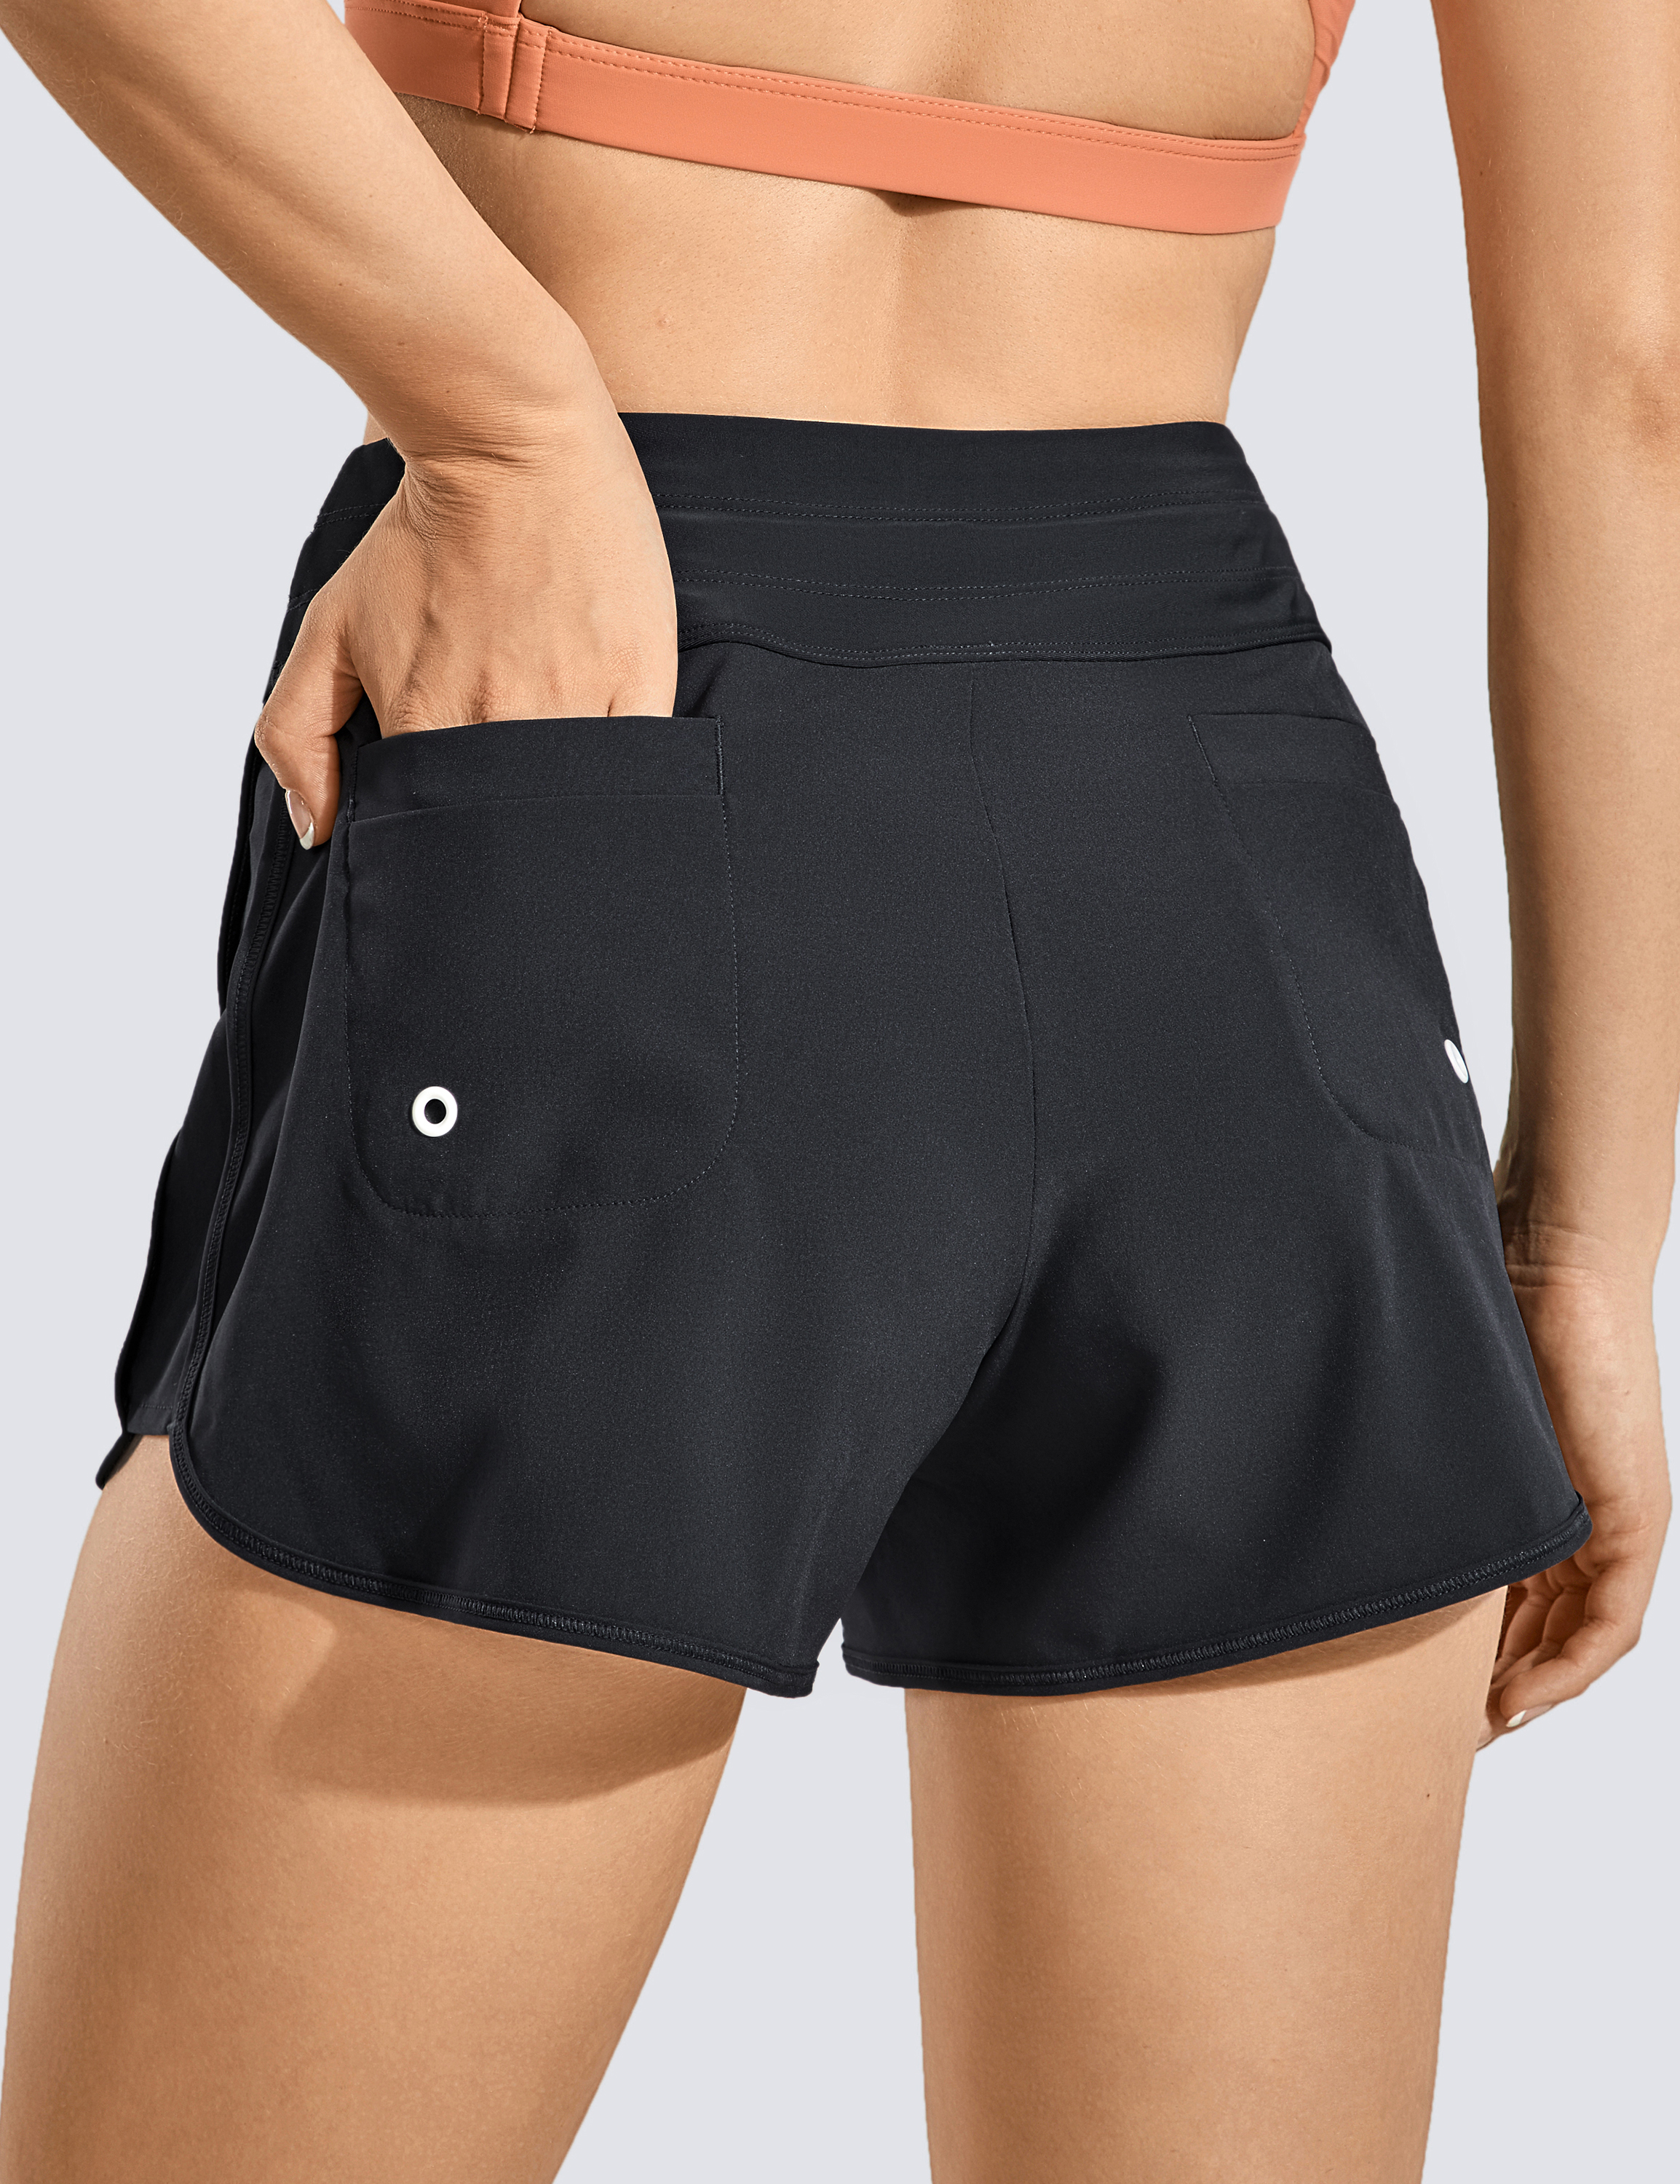  CRZ YOGA: Shorts & Skirts